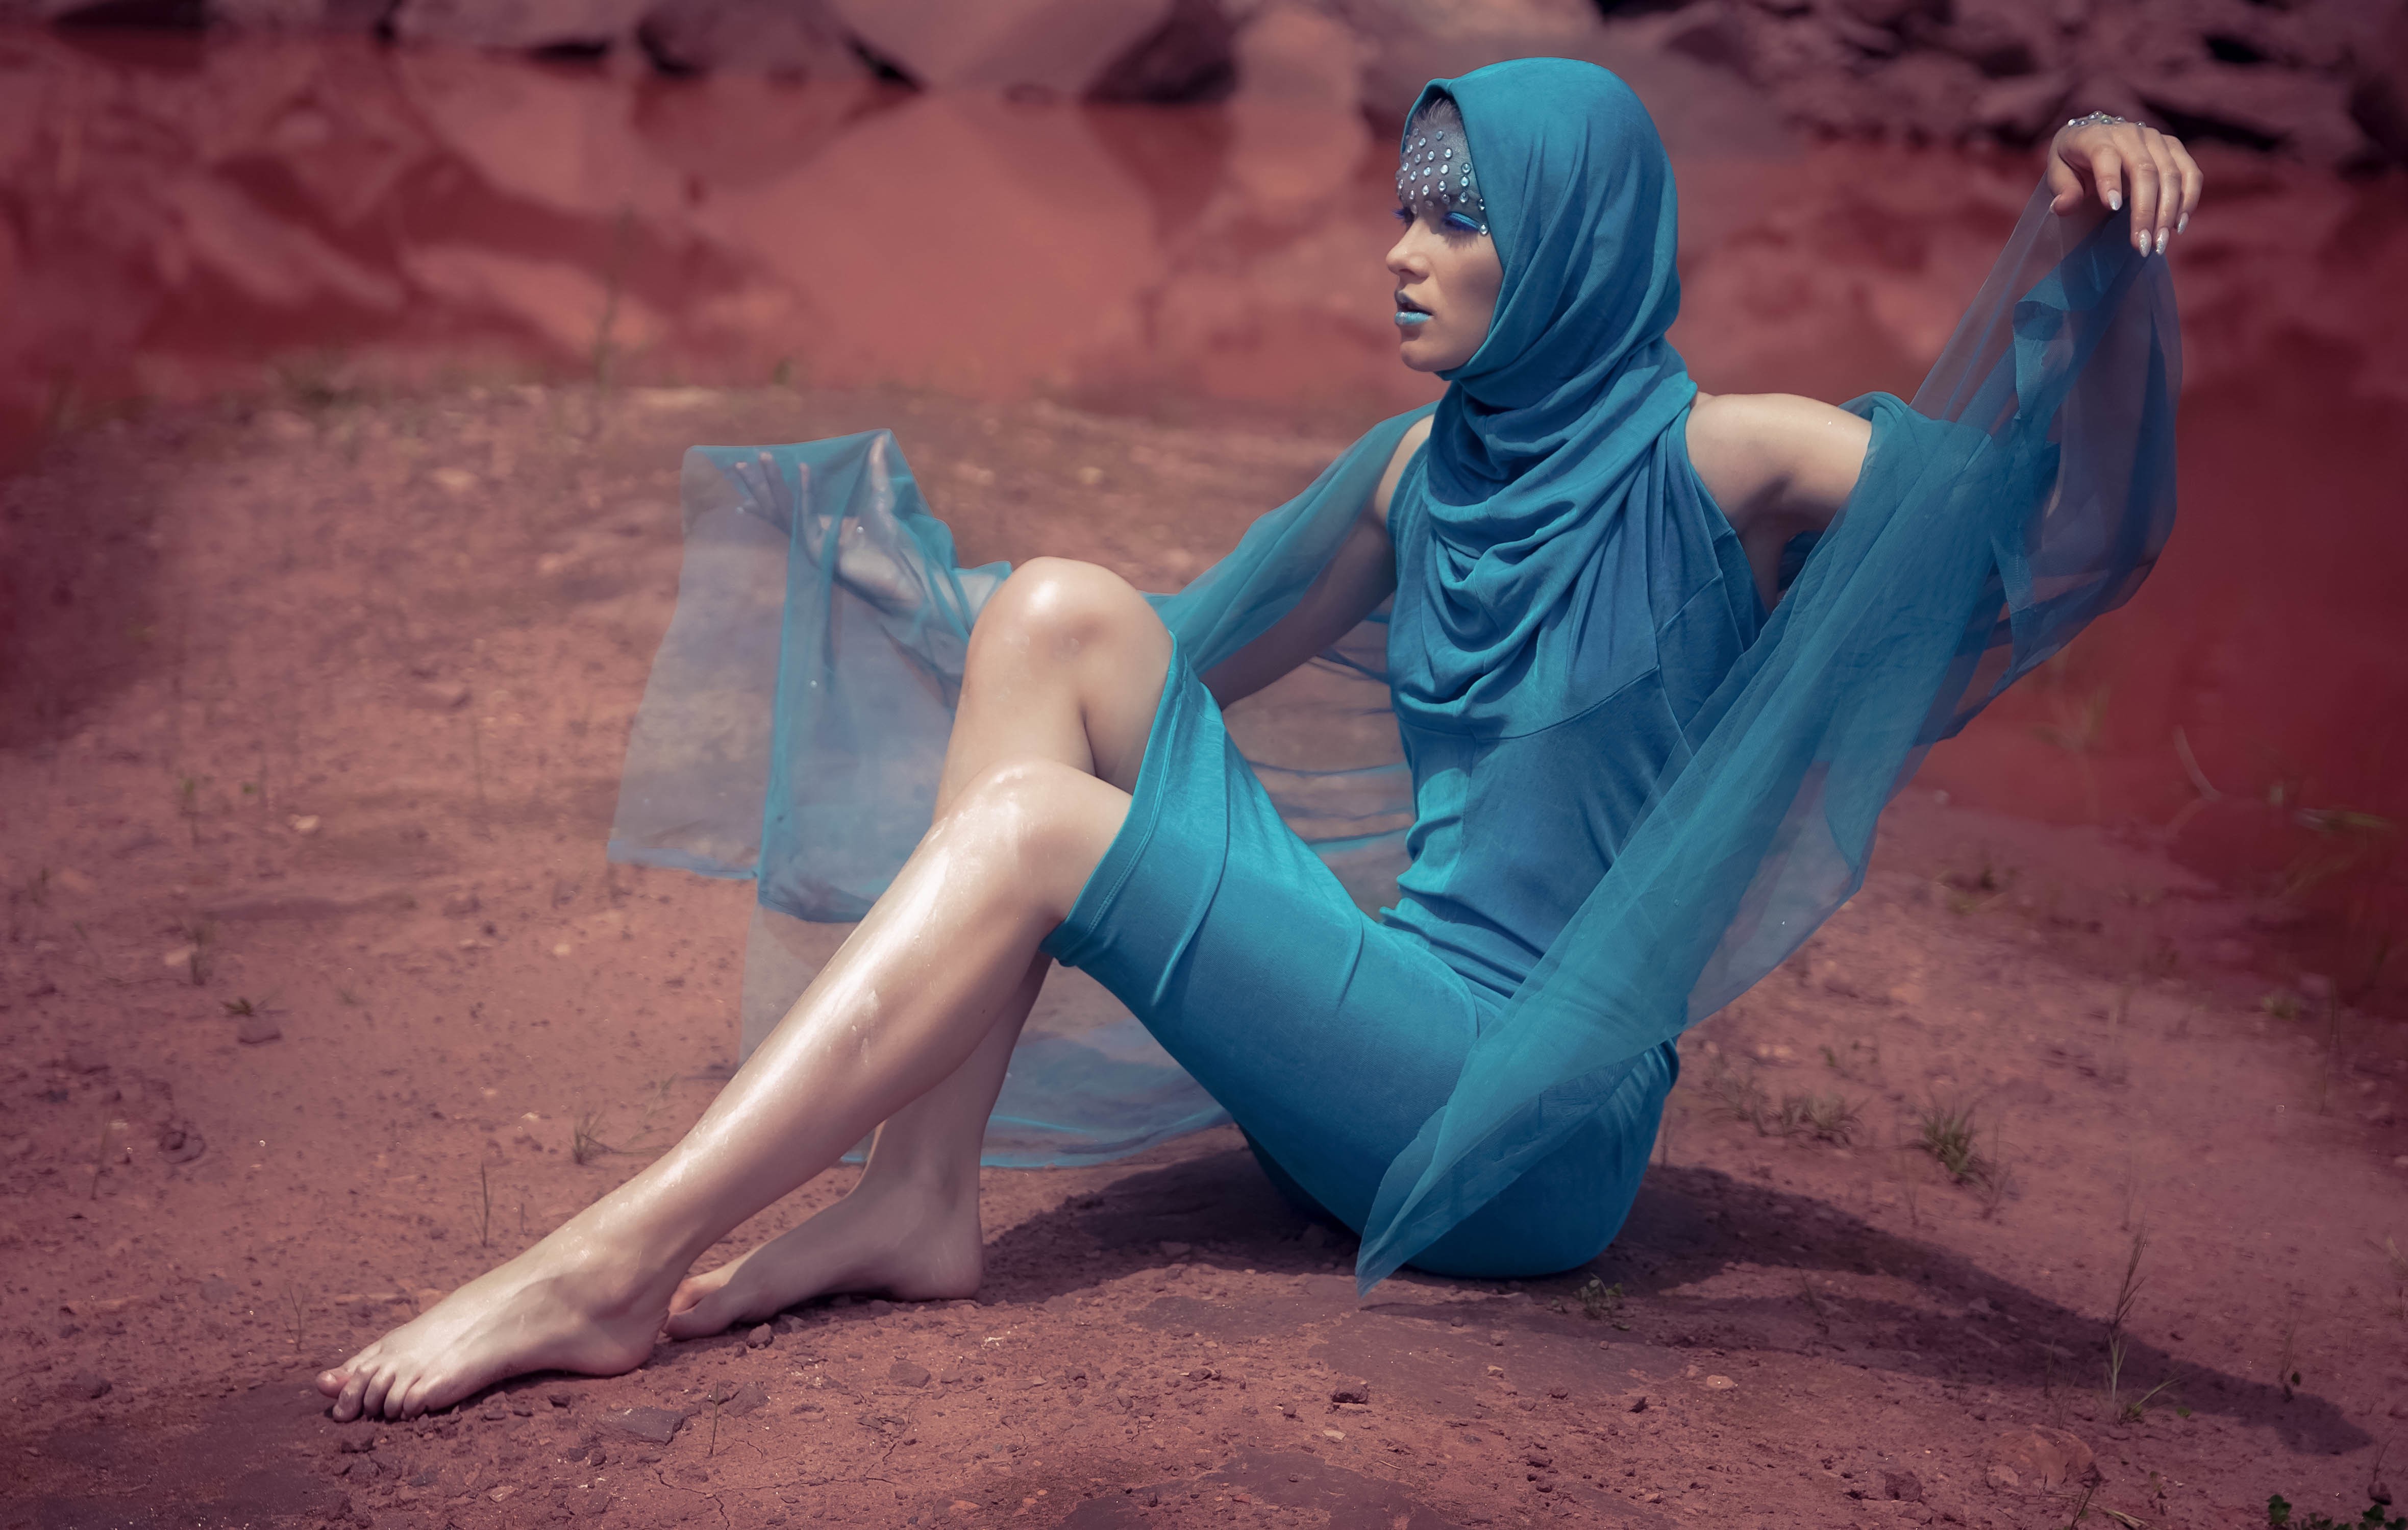 Women Model Blue Dress Barefoot Face Paint Women Outdoors Conceptual 4719x2998